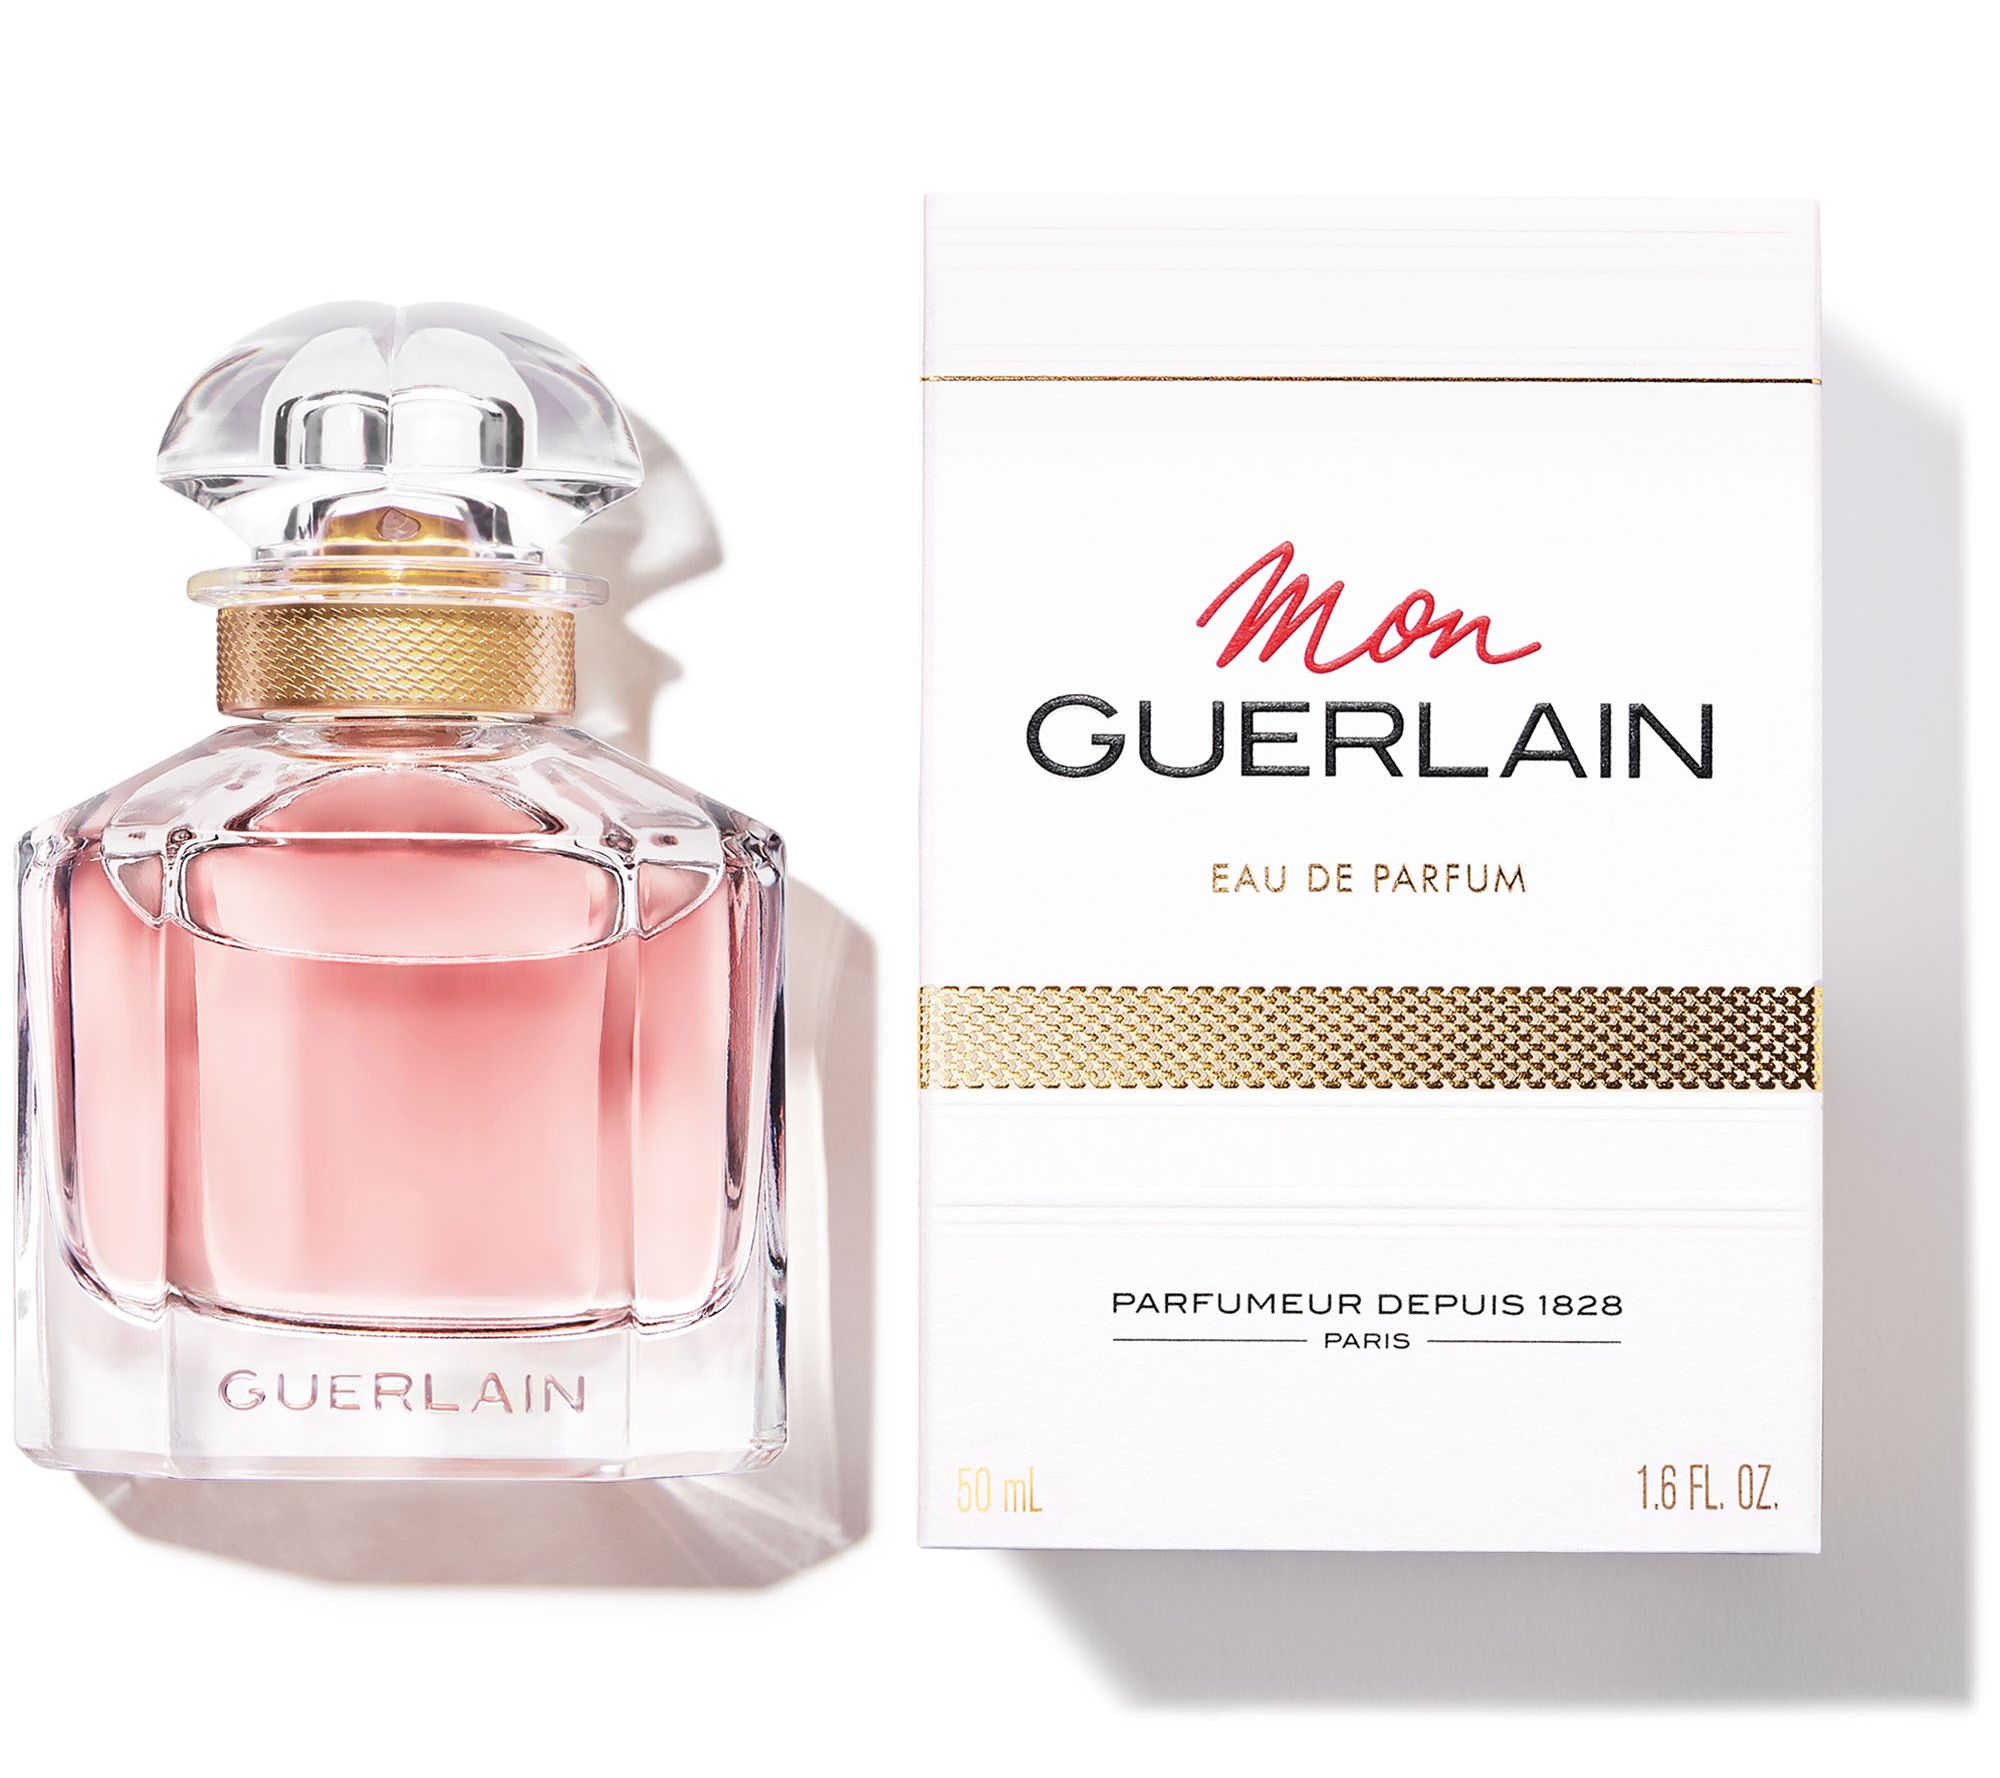 Eau Guerlain Parfum de - Mon Guerlain oz 1-fl